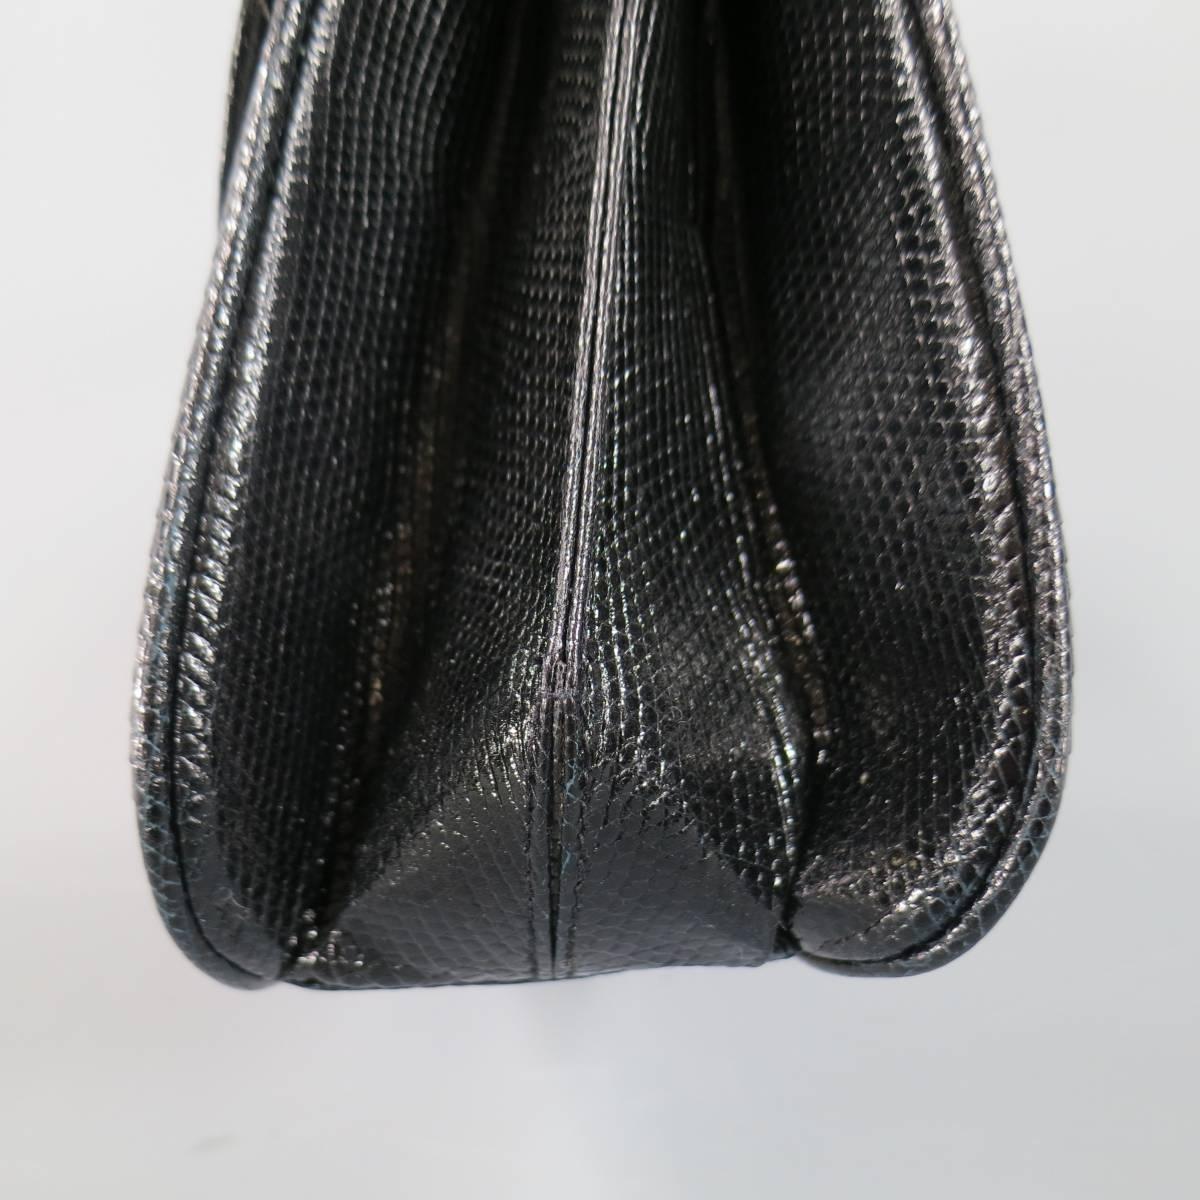 Vintage GUCCI Black Lizard Skin Leather Gold G Handbag 2